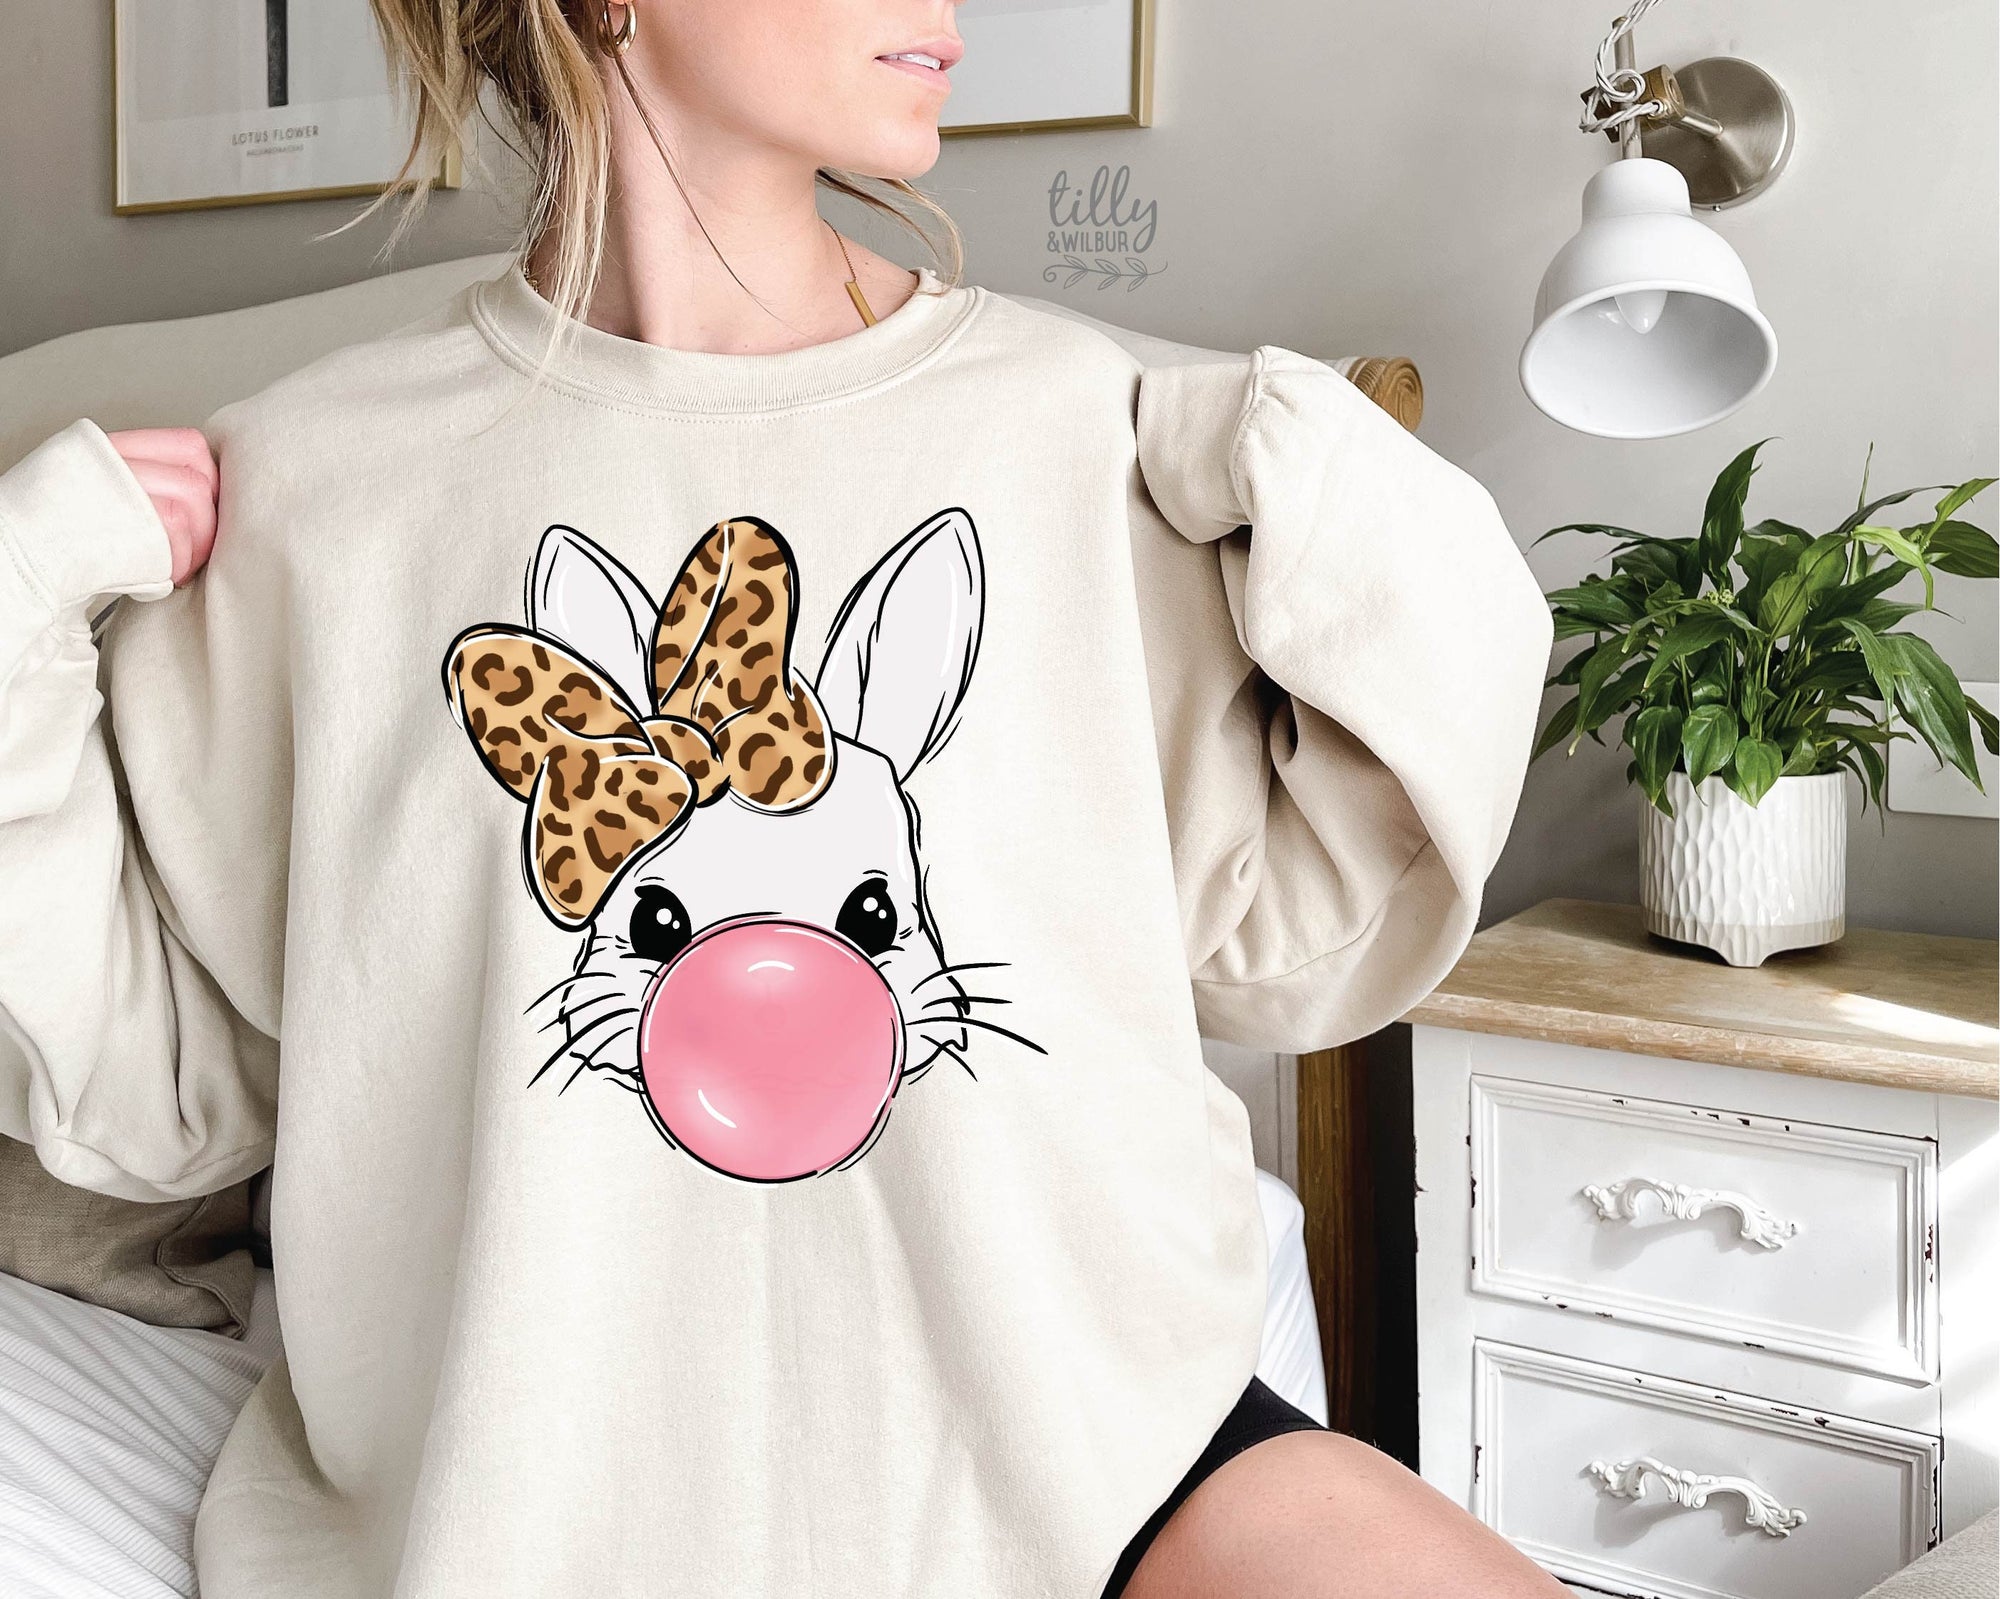 Easter Jumper, Bubblegum Bunny Rabbit Design, Easter Bunny Sweatshirt, Easter Egg Hunt, Easter Gift, Women's Easter Gift, Easter Pullover